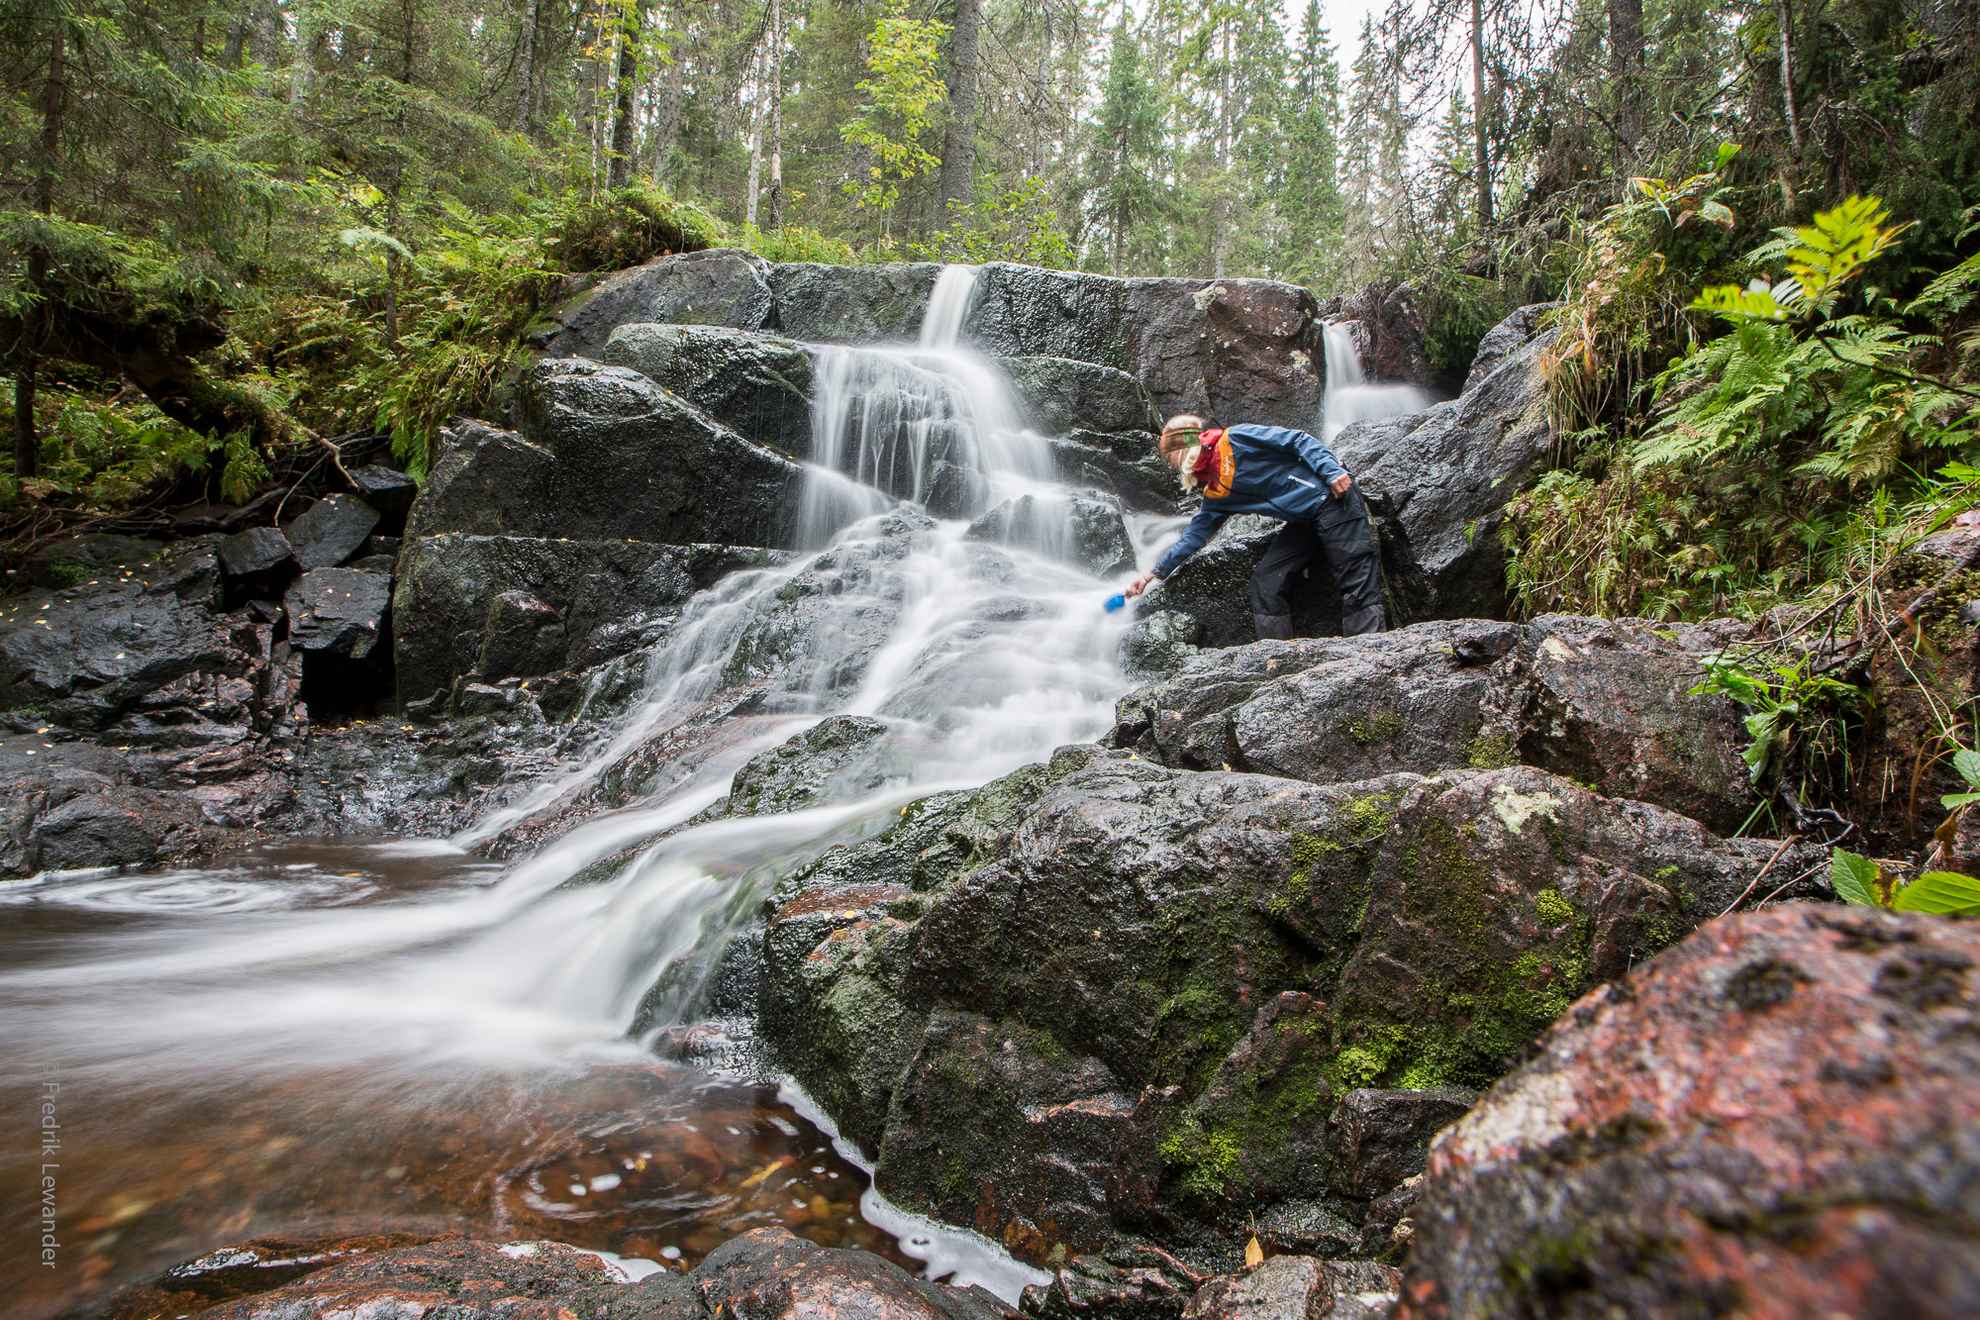 Une personne essaie de prendre de l'eau dans un ruisseau dans une forêt luxuriante.